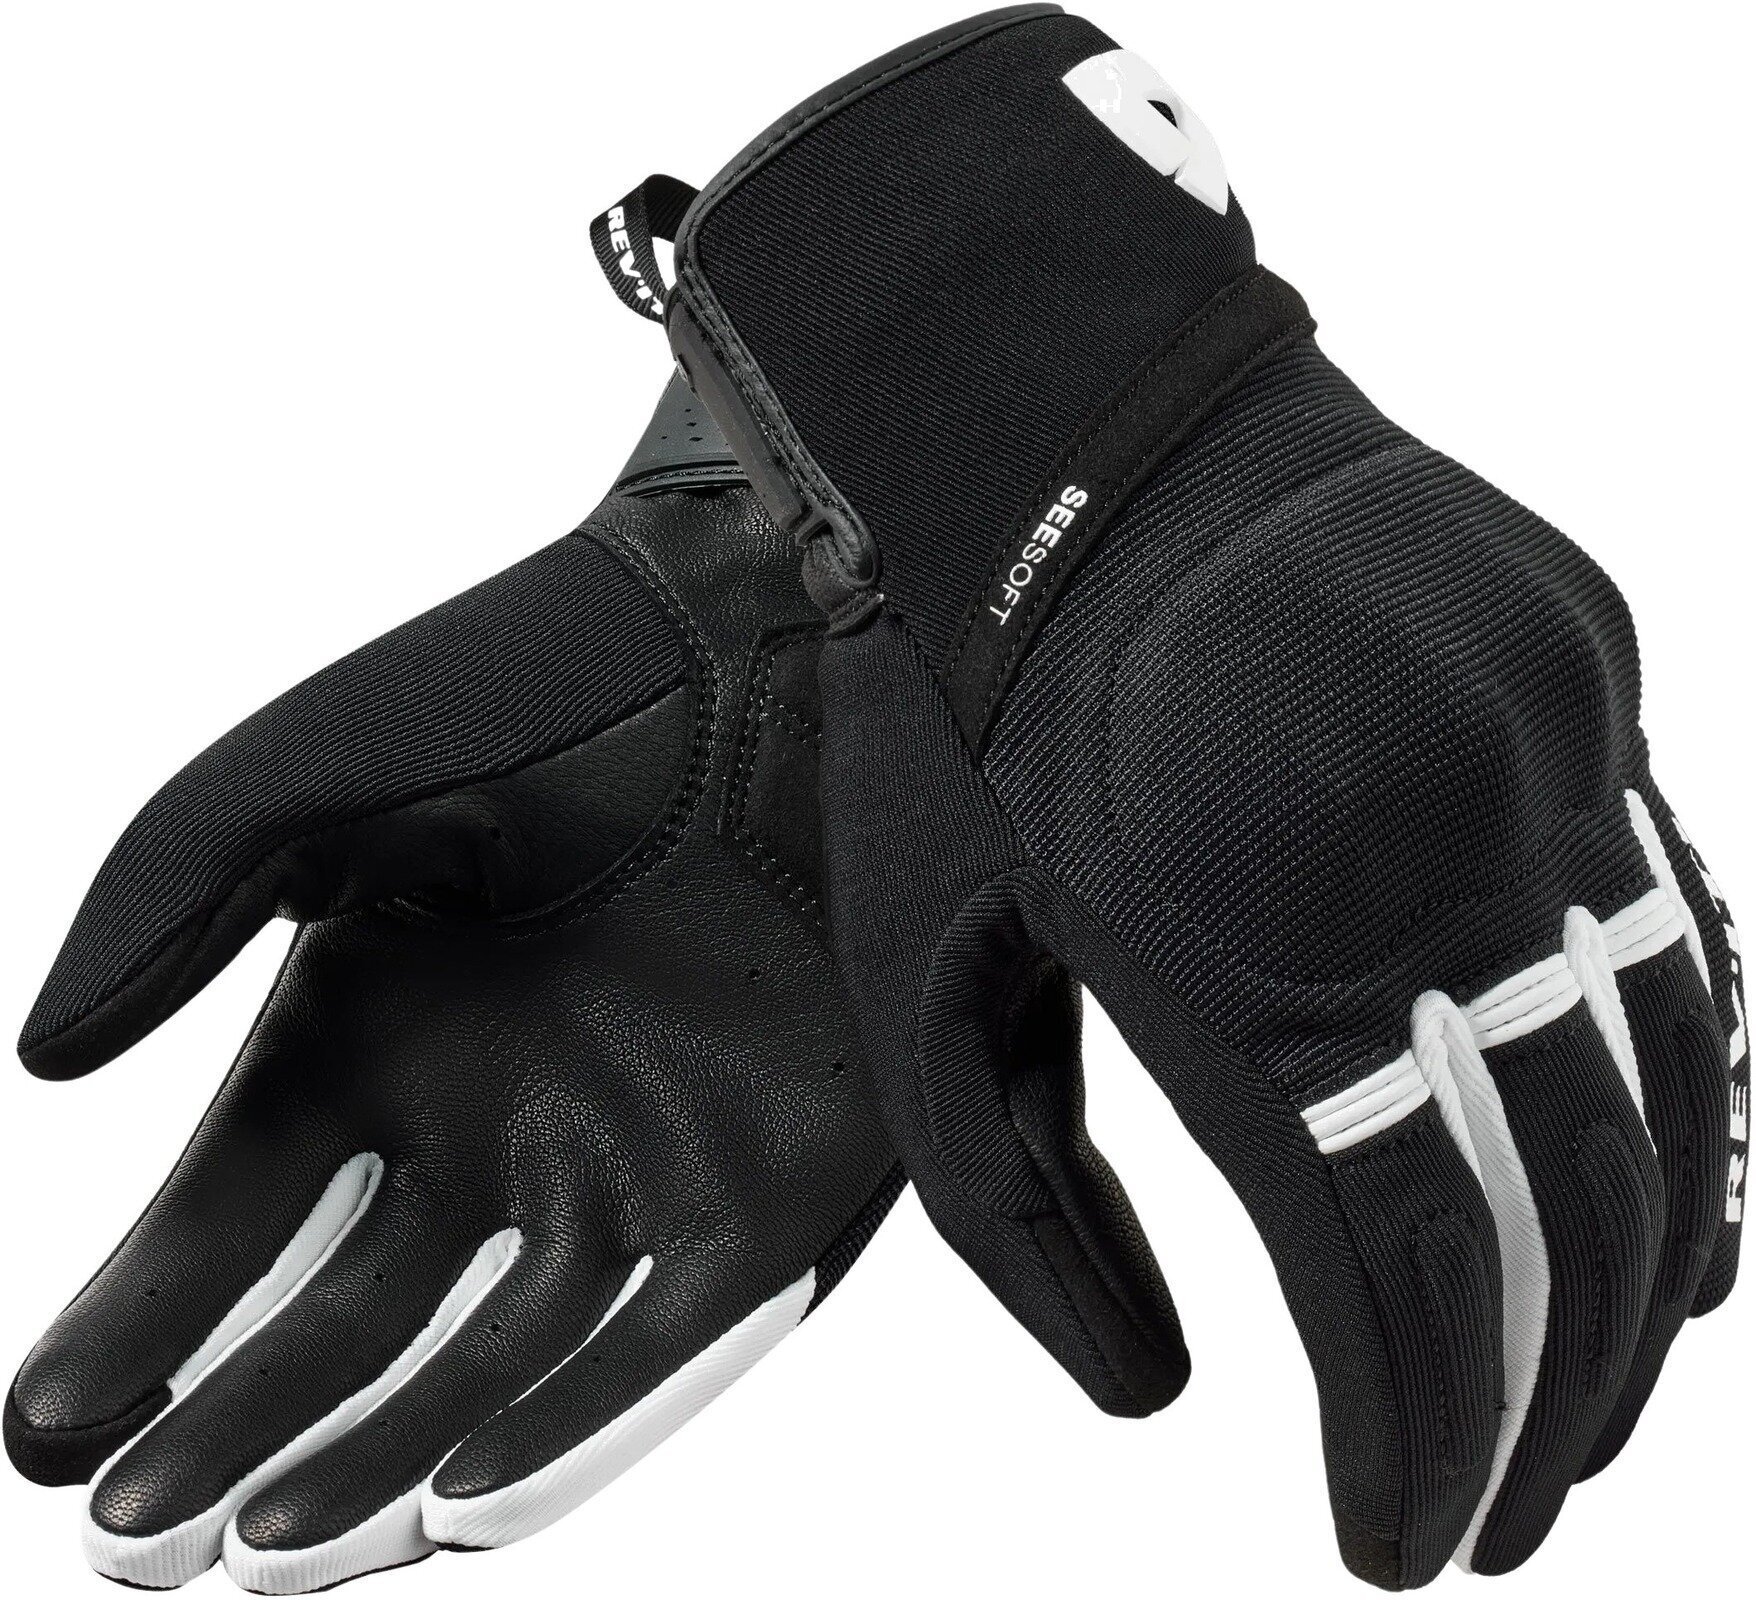 Moottoripyöräilijän käsineet Rev'it! Gloves Mosca 2 Black/White 2XL Moottoripyöräilijän käsineet